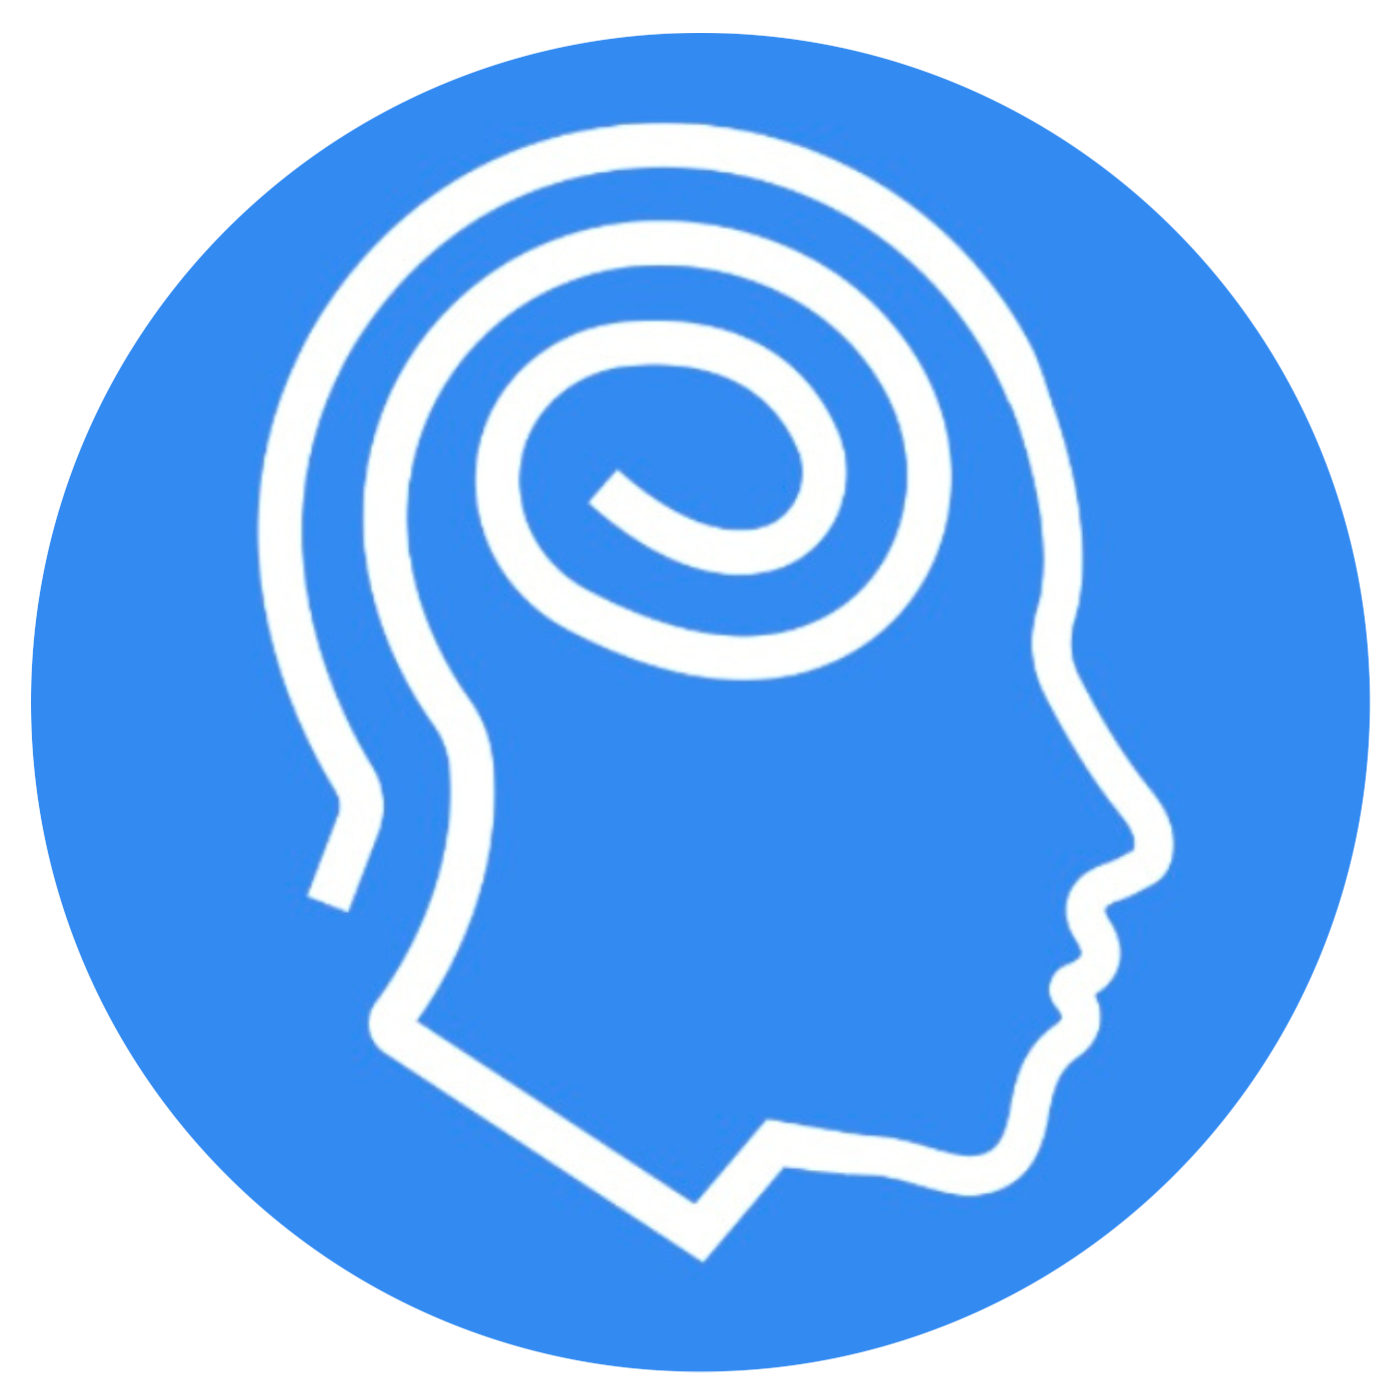 Mindscape Hypnotherapy Logo